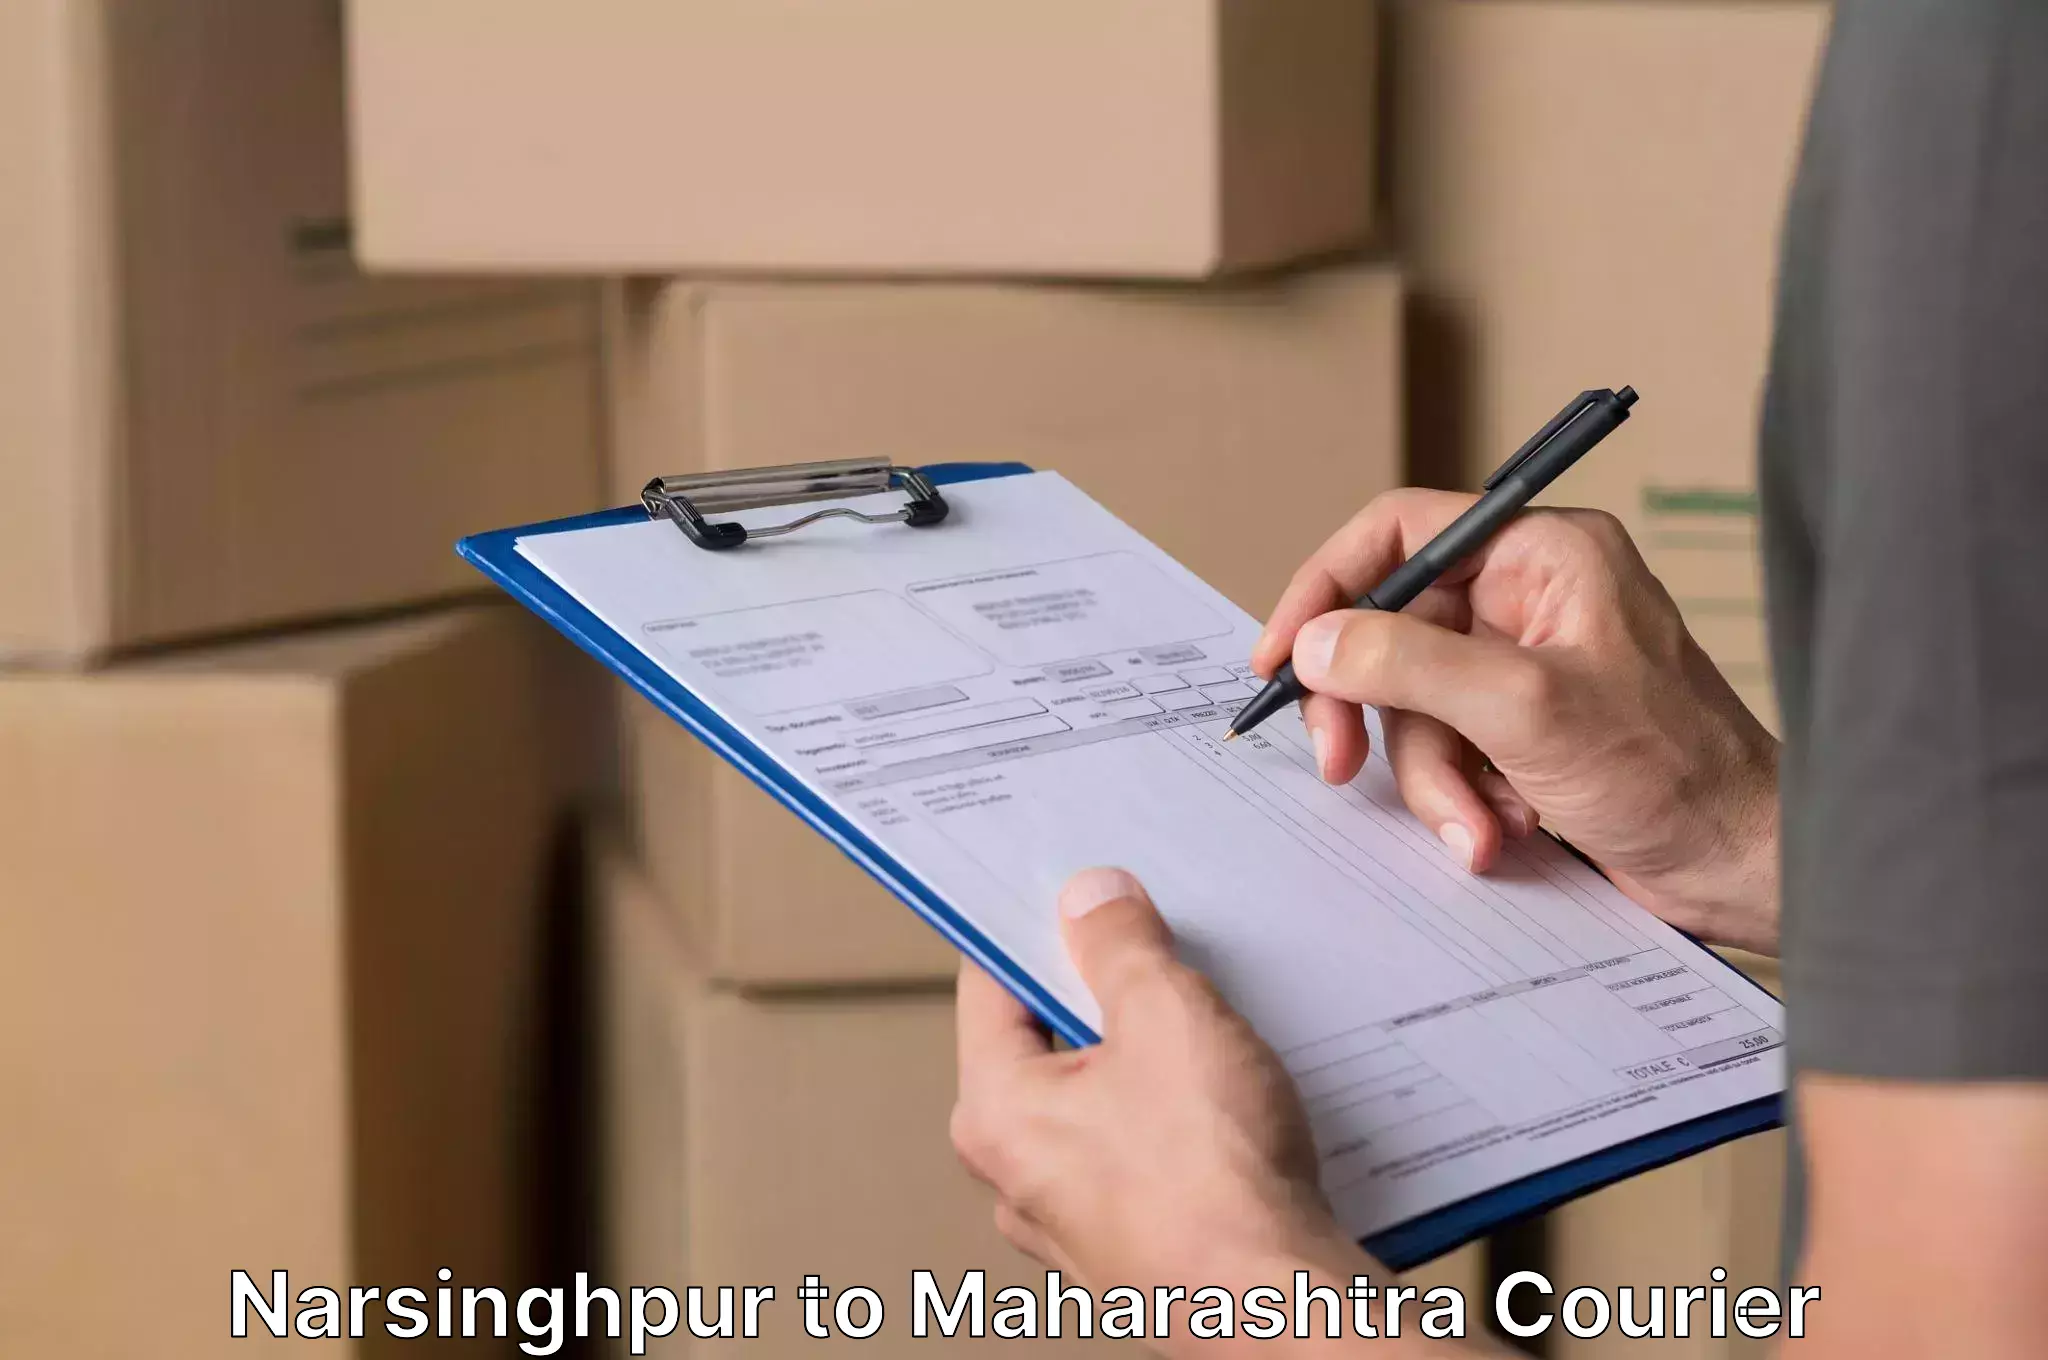 Furniture moving assistance Narsinghpur to Maharashtra